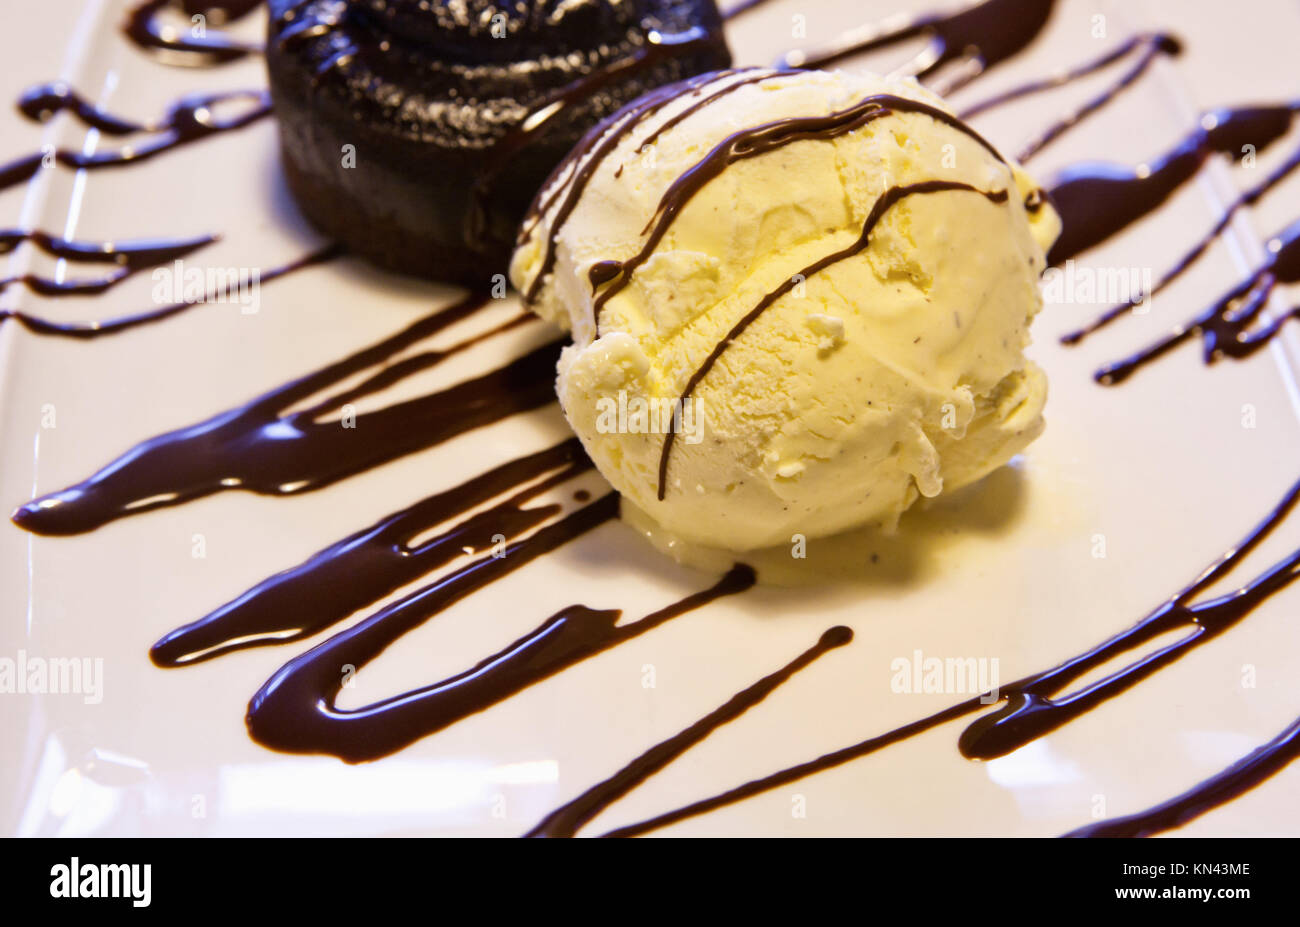 Eine Kugel Vanilleeis mit Schokoladensauce in einer Platte. Stockfoto